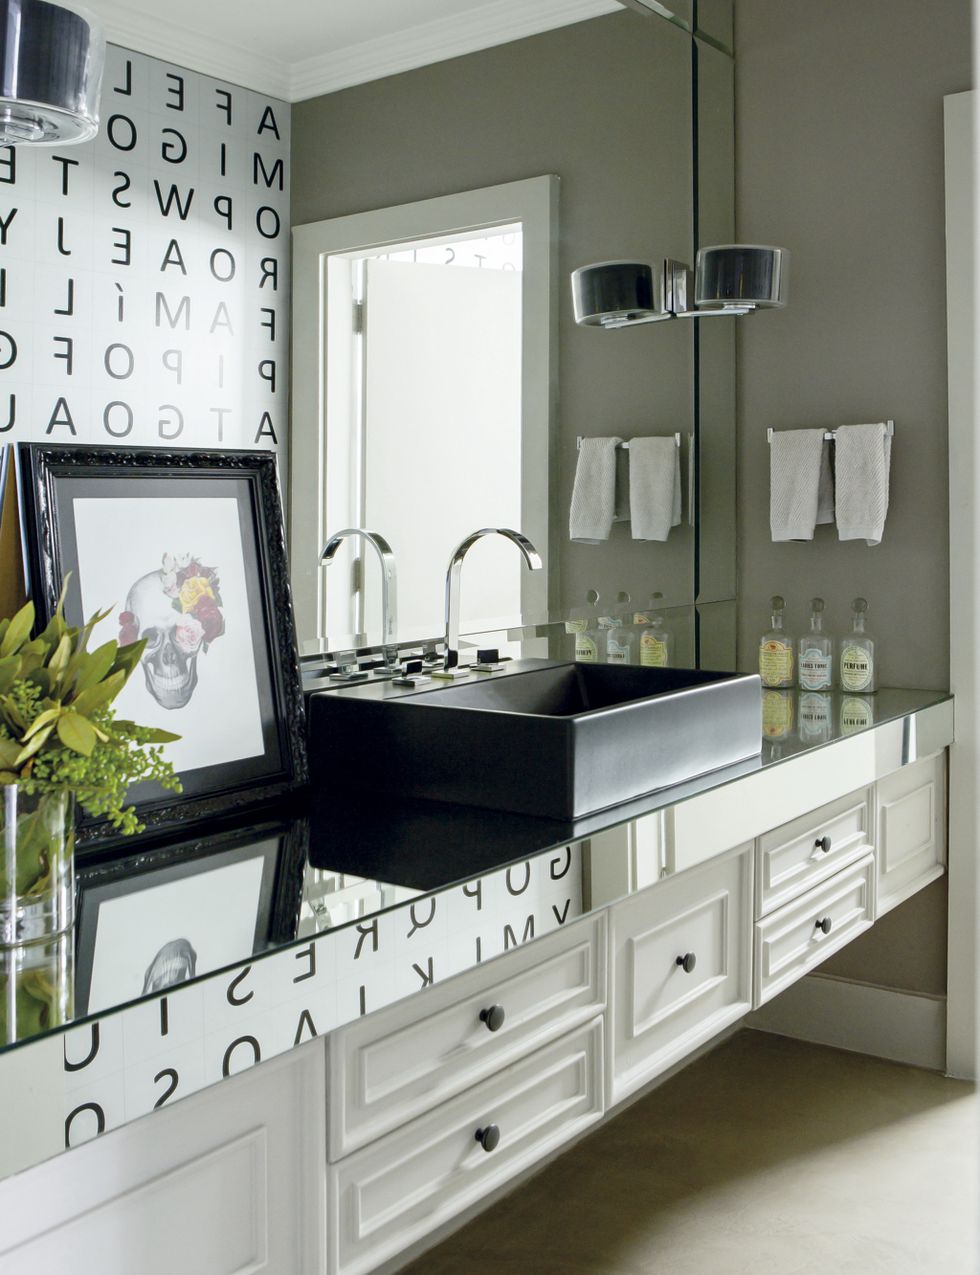 <p>Una &quot;sopa de letras&quot; decora una de las paredes del baño y se refleja sobre el mueble de lavabo negro, revestido con superficies de espejo.</p>